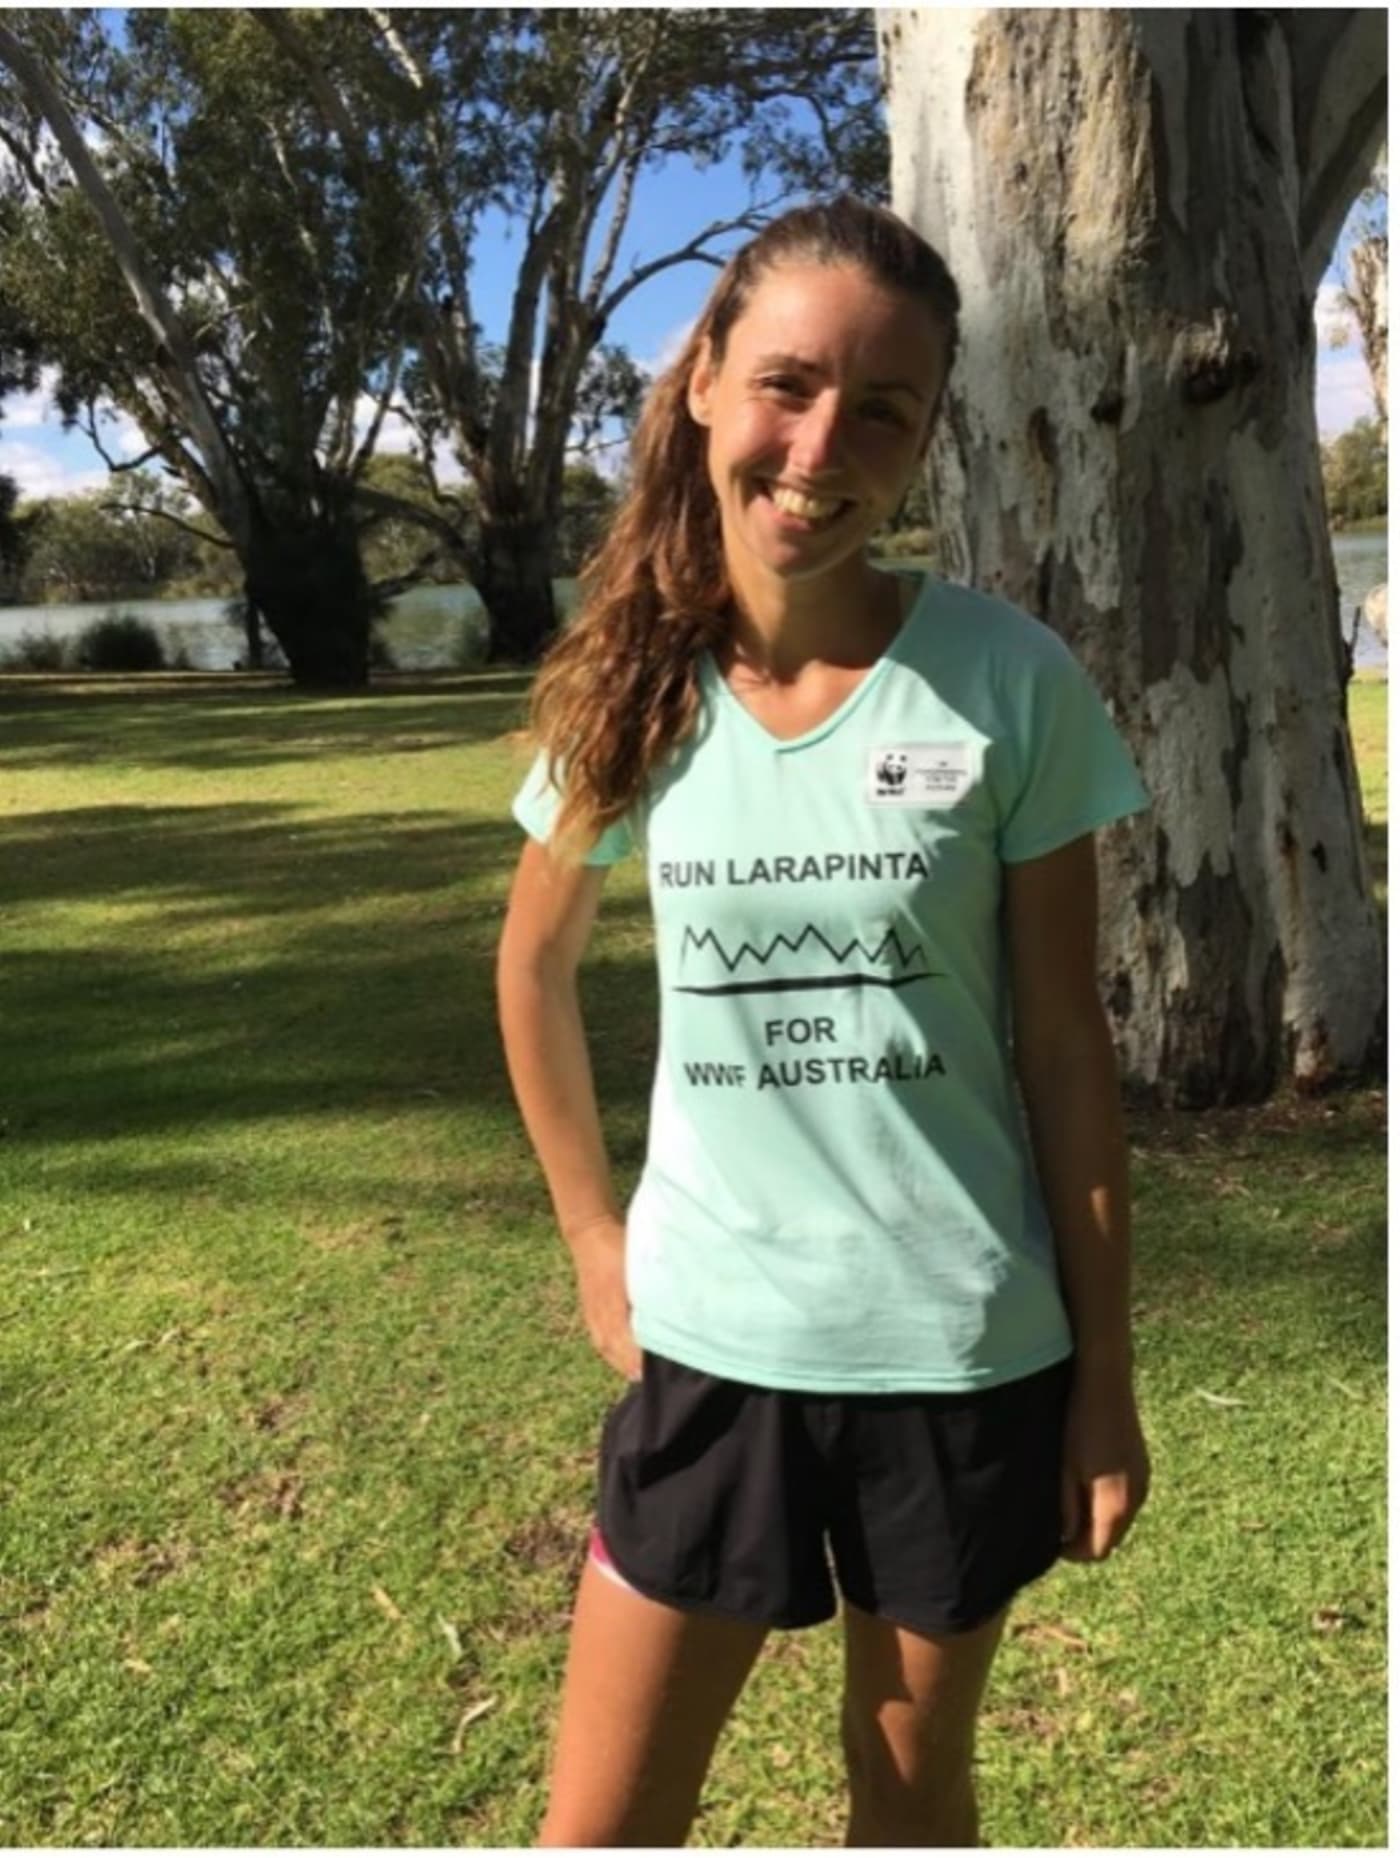 Morgane ran more than 240km non-stop to raise money for WWF-Australia